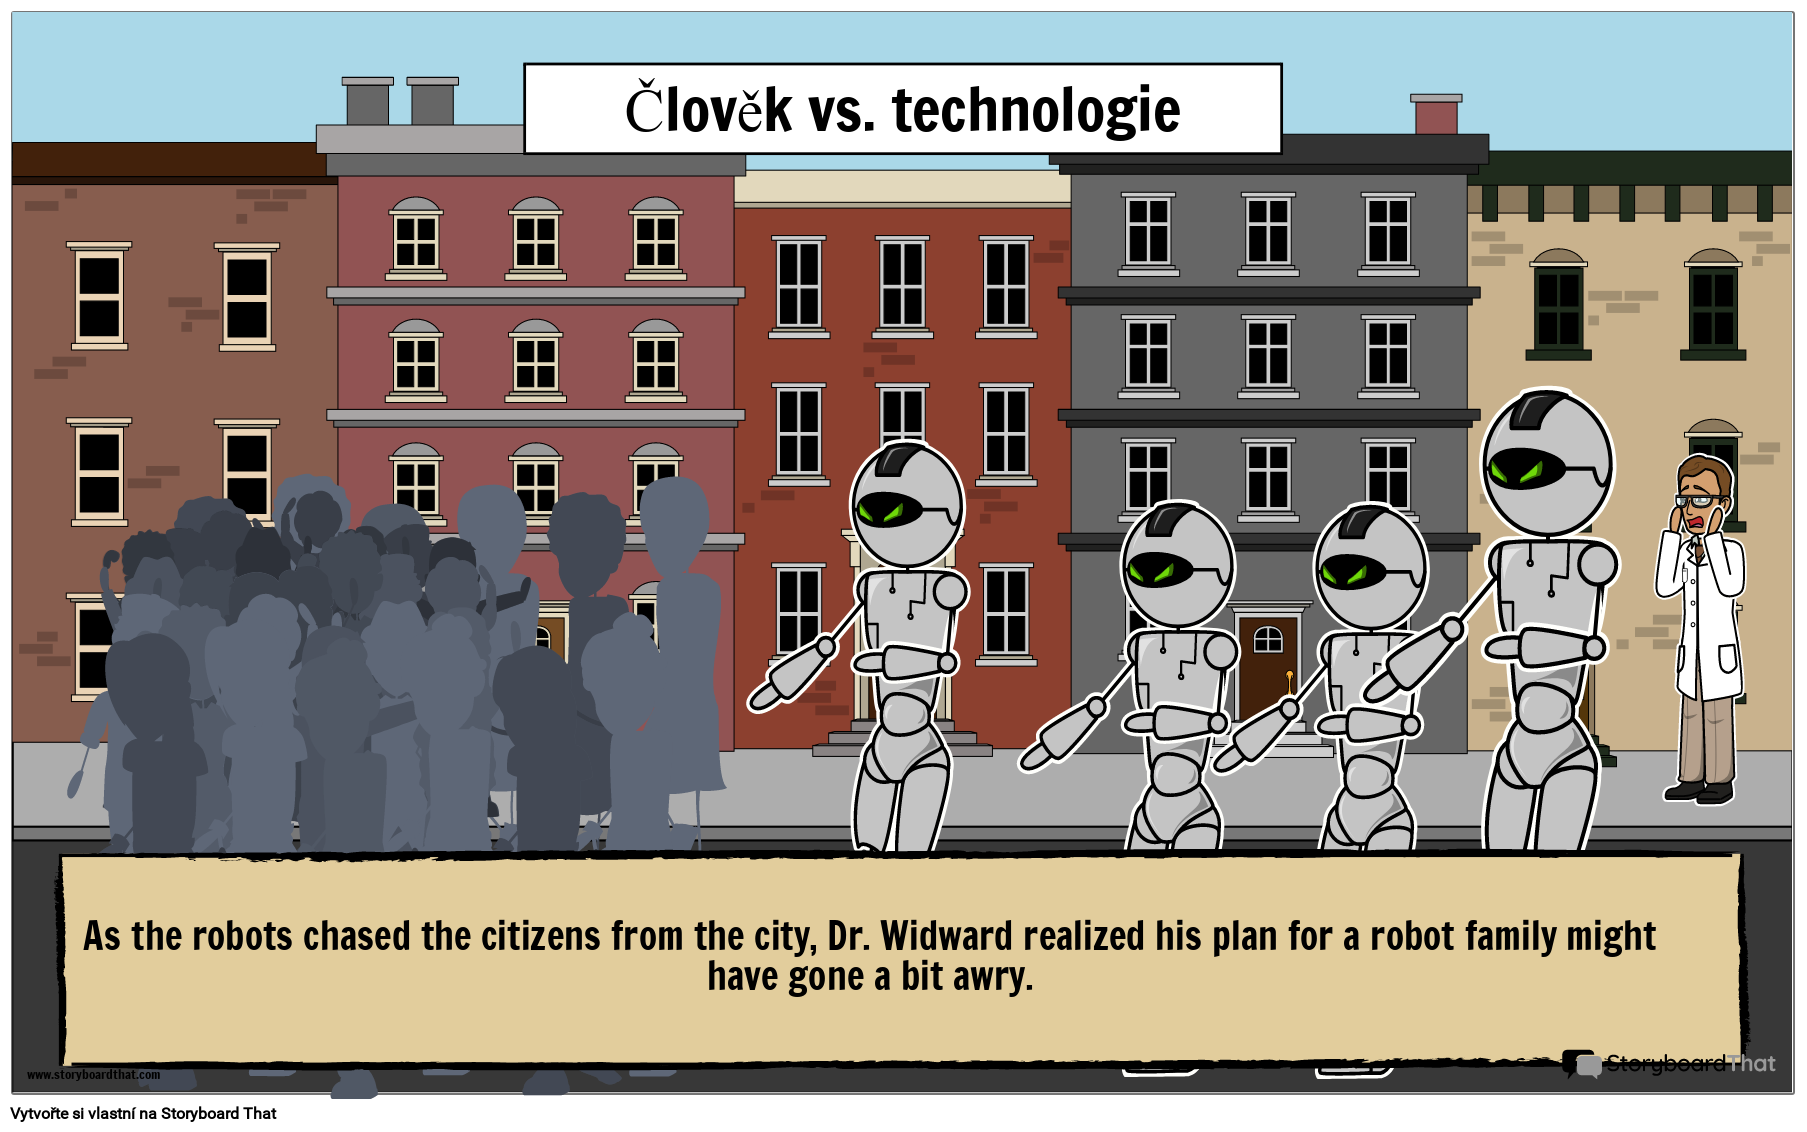 Plakát Ilustrující Charakter vs. Technologický Konflikt